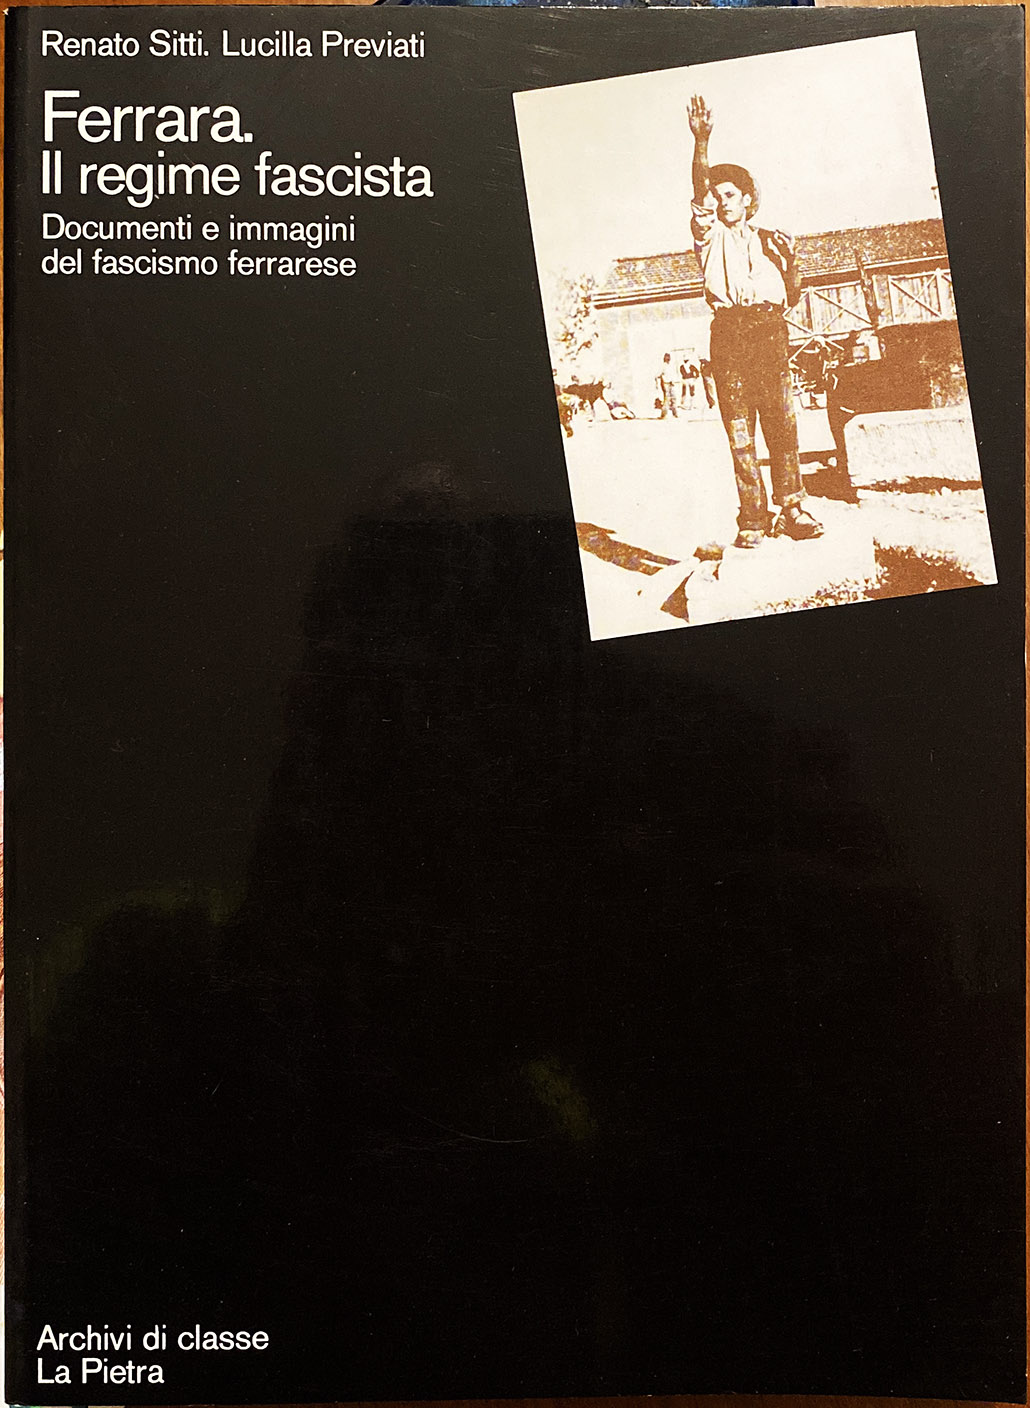 Renato Sitti e Lucilla Previati, Ferrara, il regime fascista. Documenti e immagini del fascismo ferrarese, Ed. La Pietra, 1976